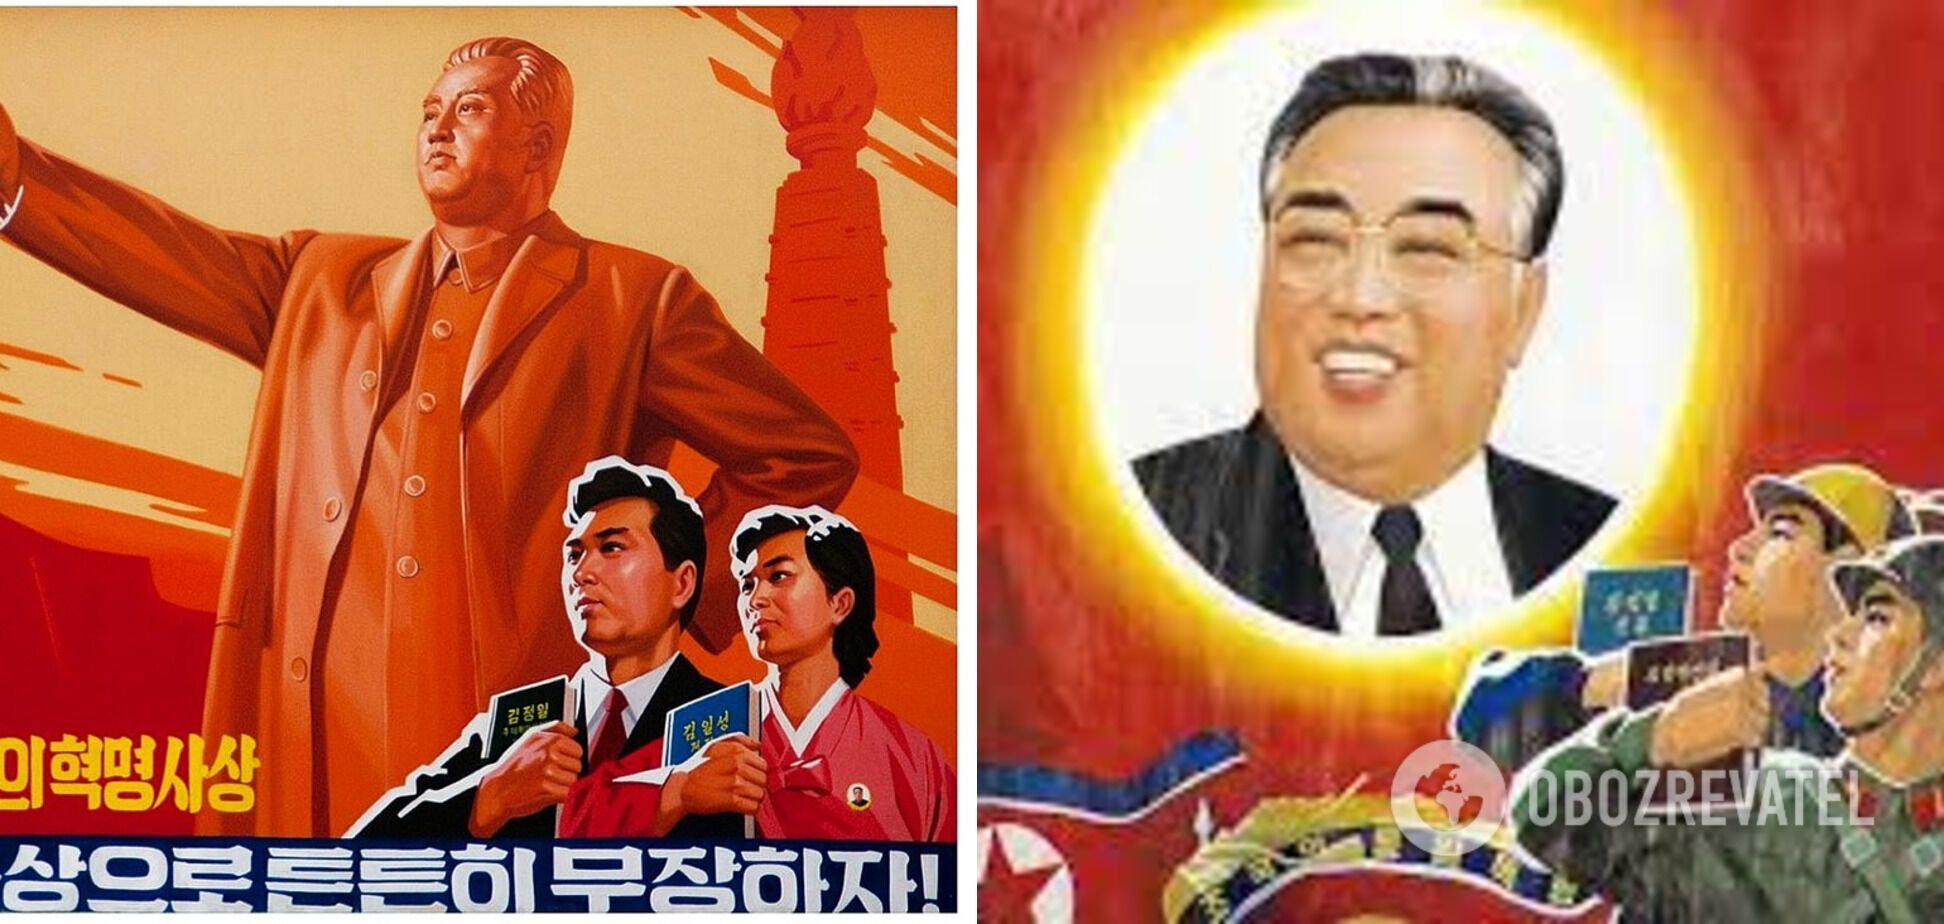 Рекламная кампания Ким Чен Ына